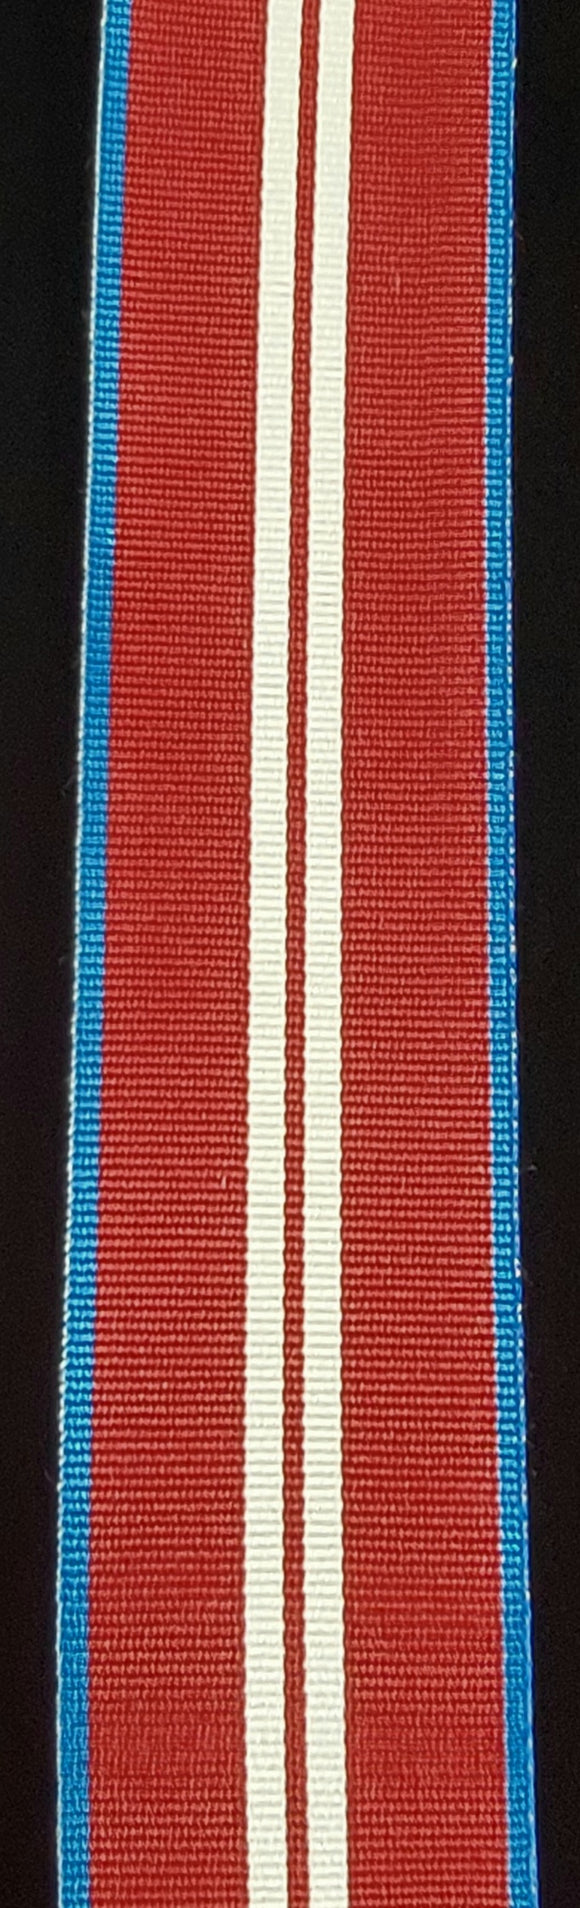 Ribbon, Queen's Diamond Jubilee Medal 2012